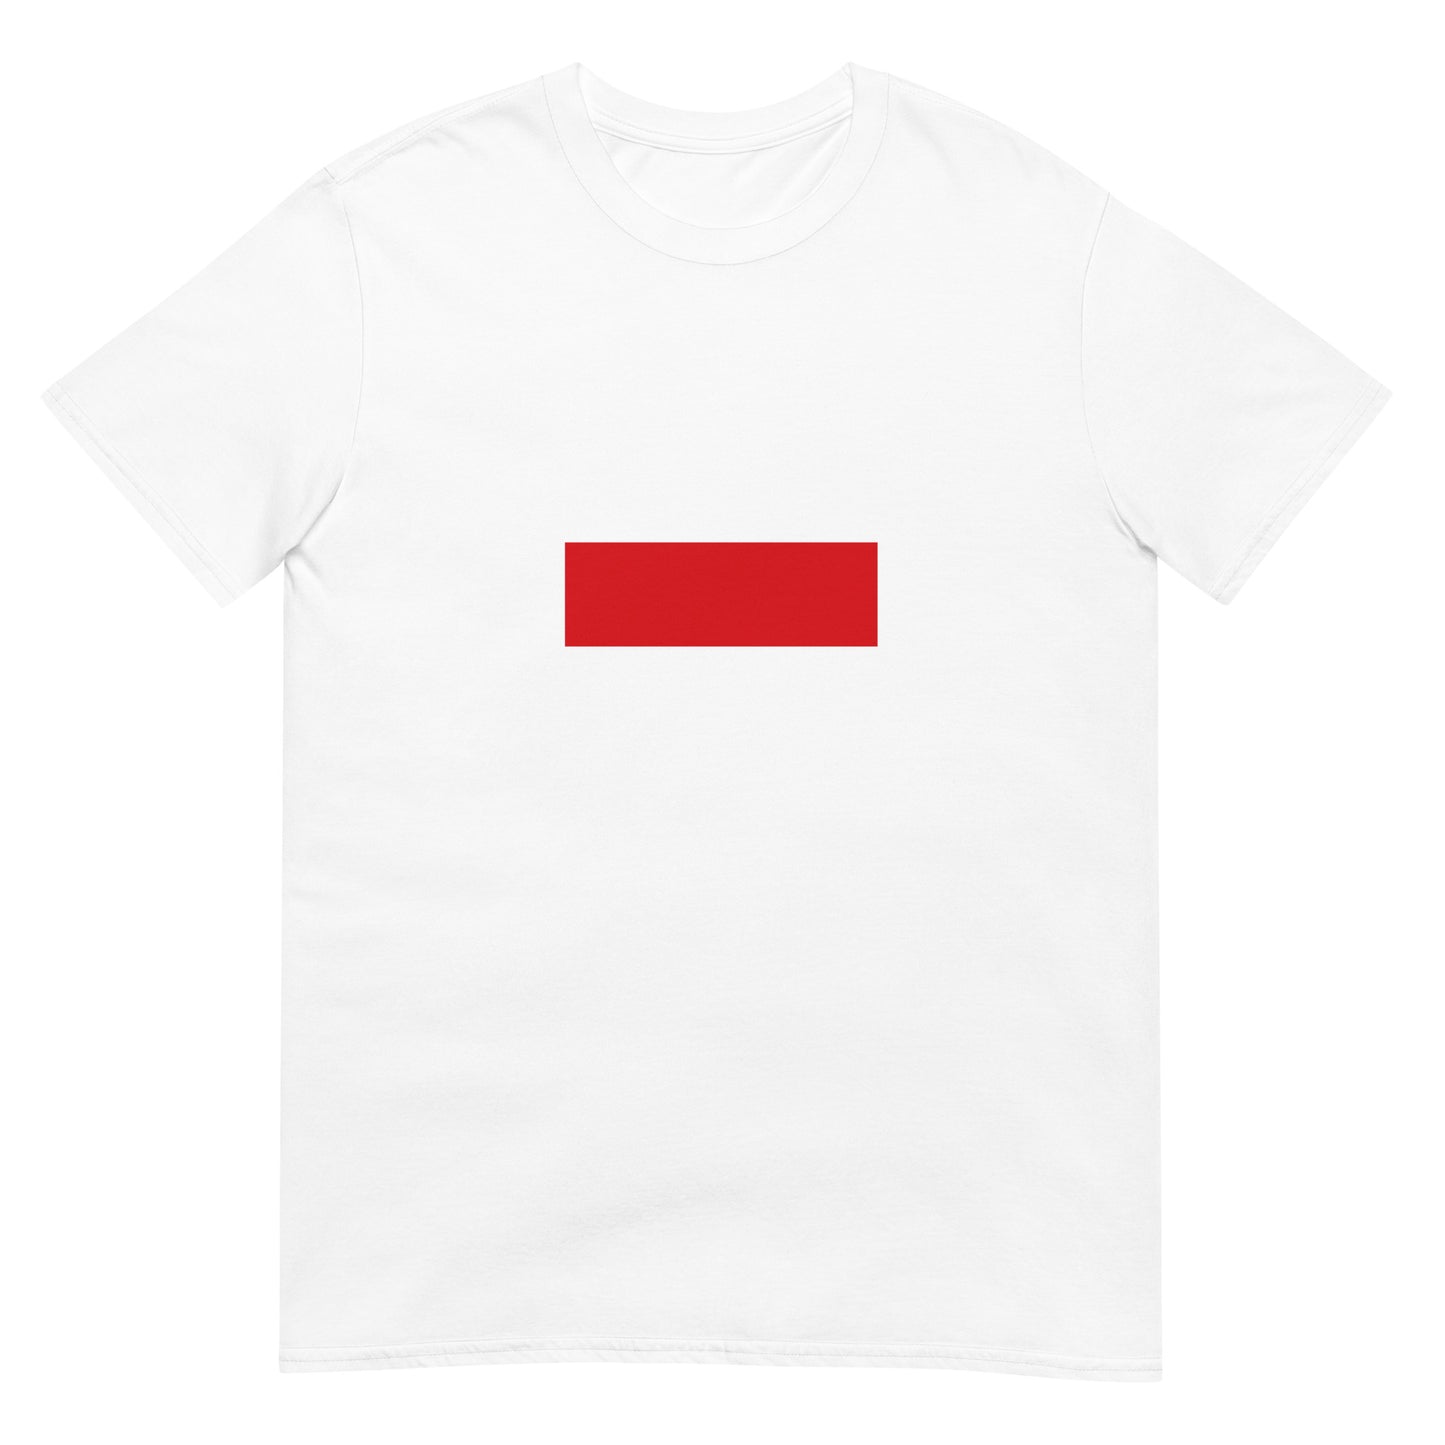 Czech Republic - Czech Socialist Republic (1969-1990) | Historical Flag Short-Sleeve Unisex T-Shirt